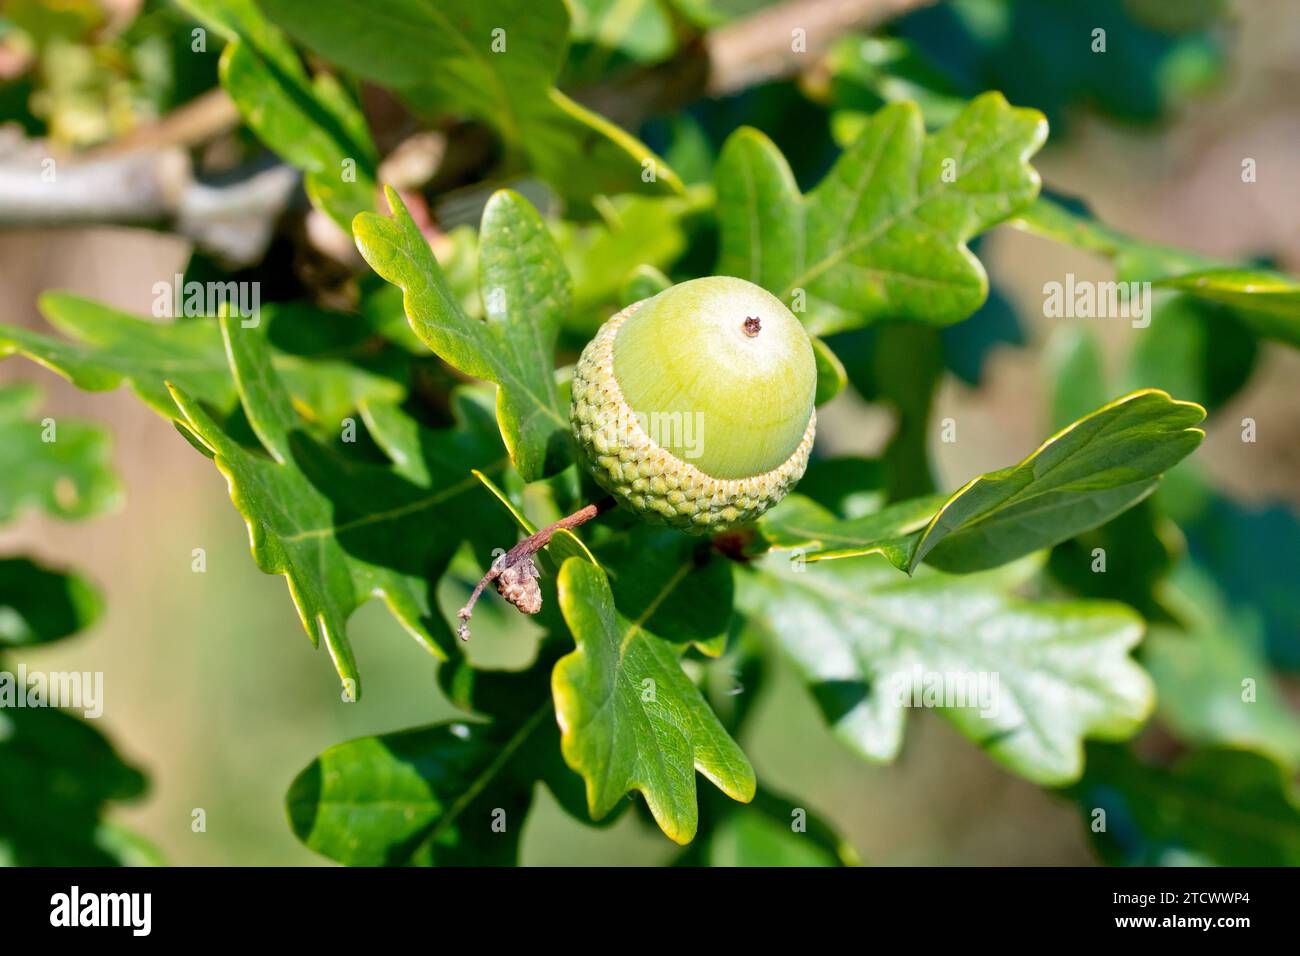 Quercia inglese o quercia peduncolata (quercus robur), primo piano che mostra una singola ghianda o frutto che si sviluppa tra le foglie dell'albero. Foto Stock